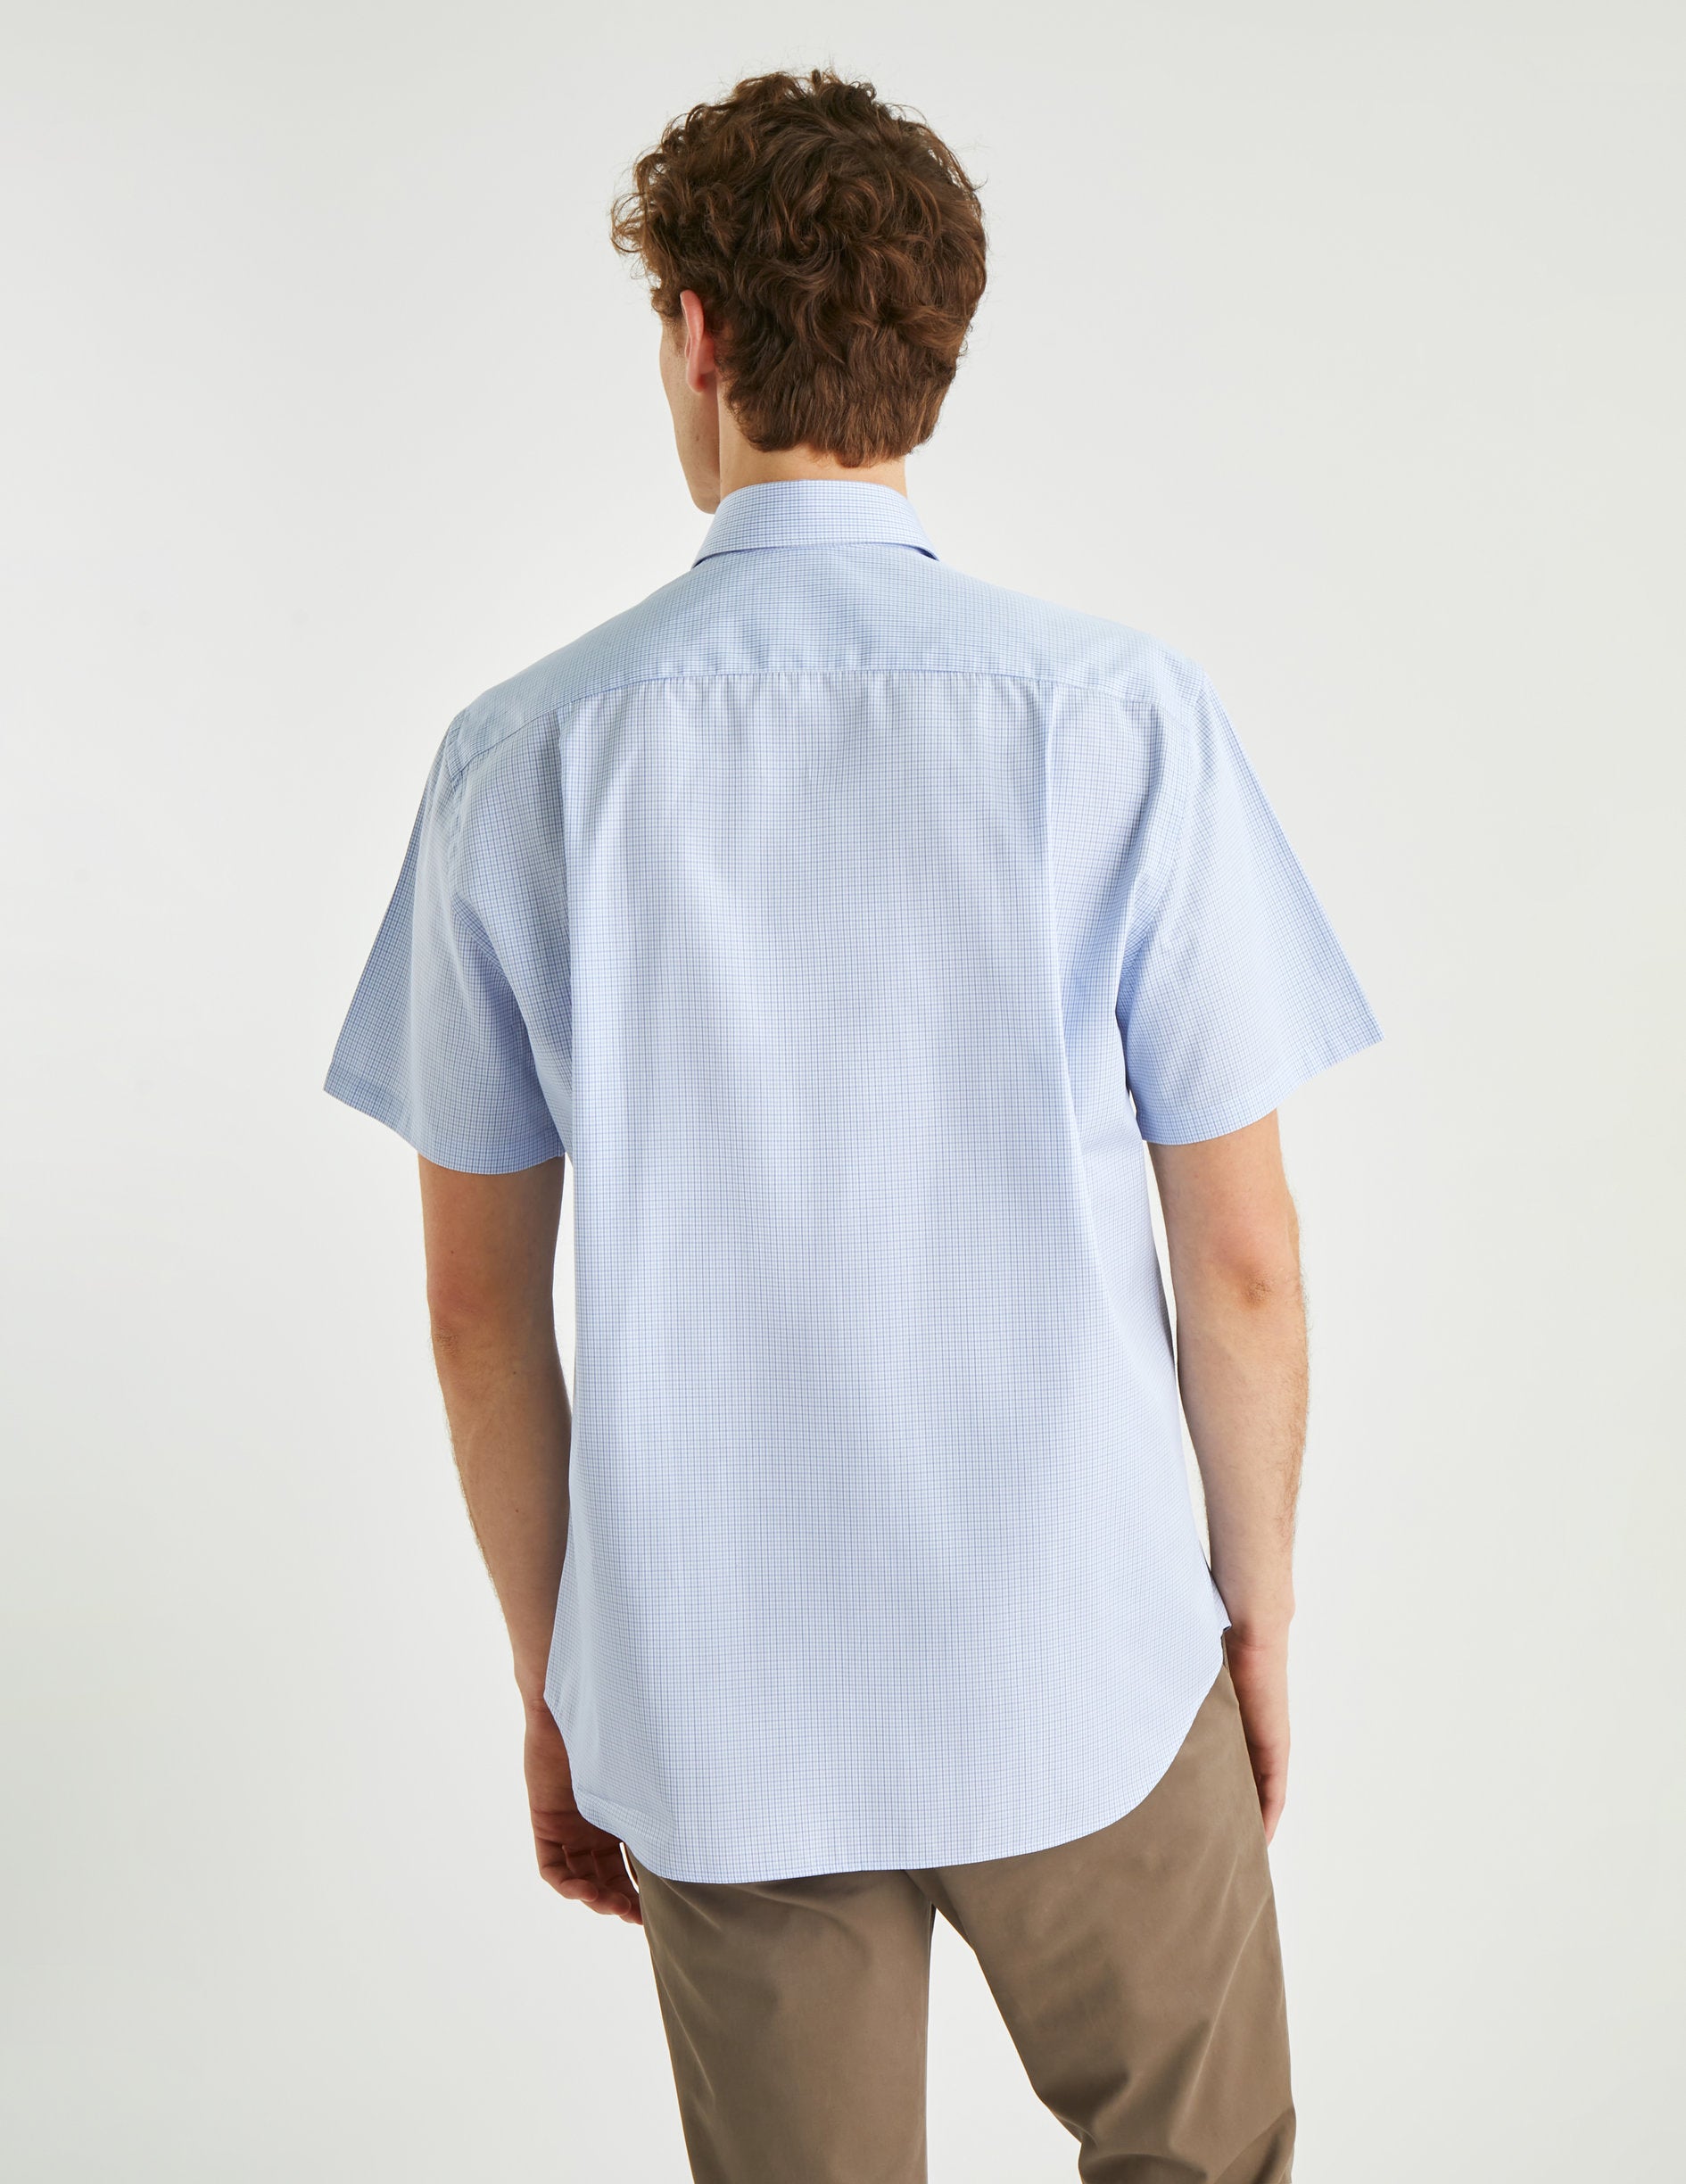 Chemise Classique manches courtes à carreaux bleus - Popeline - Col Américain